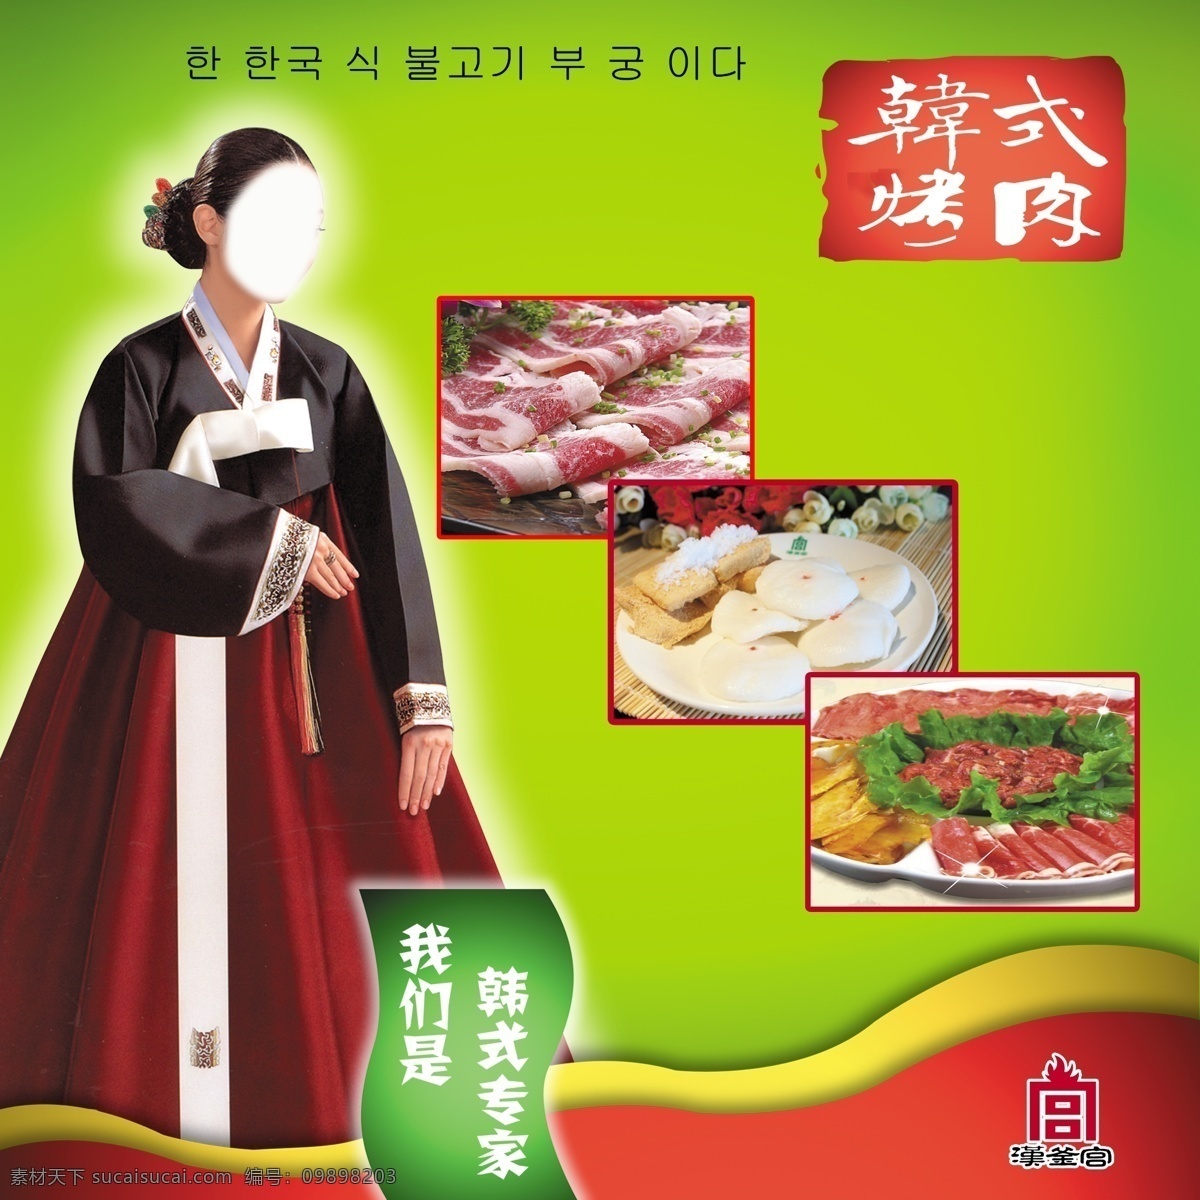 韩式烤肉 烤肉 韩式美女 肉食 糕点 青绿色底板 广告设计模板 源文件